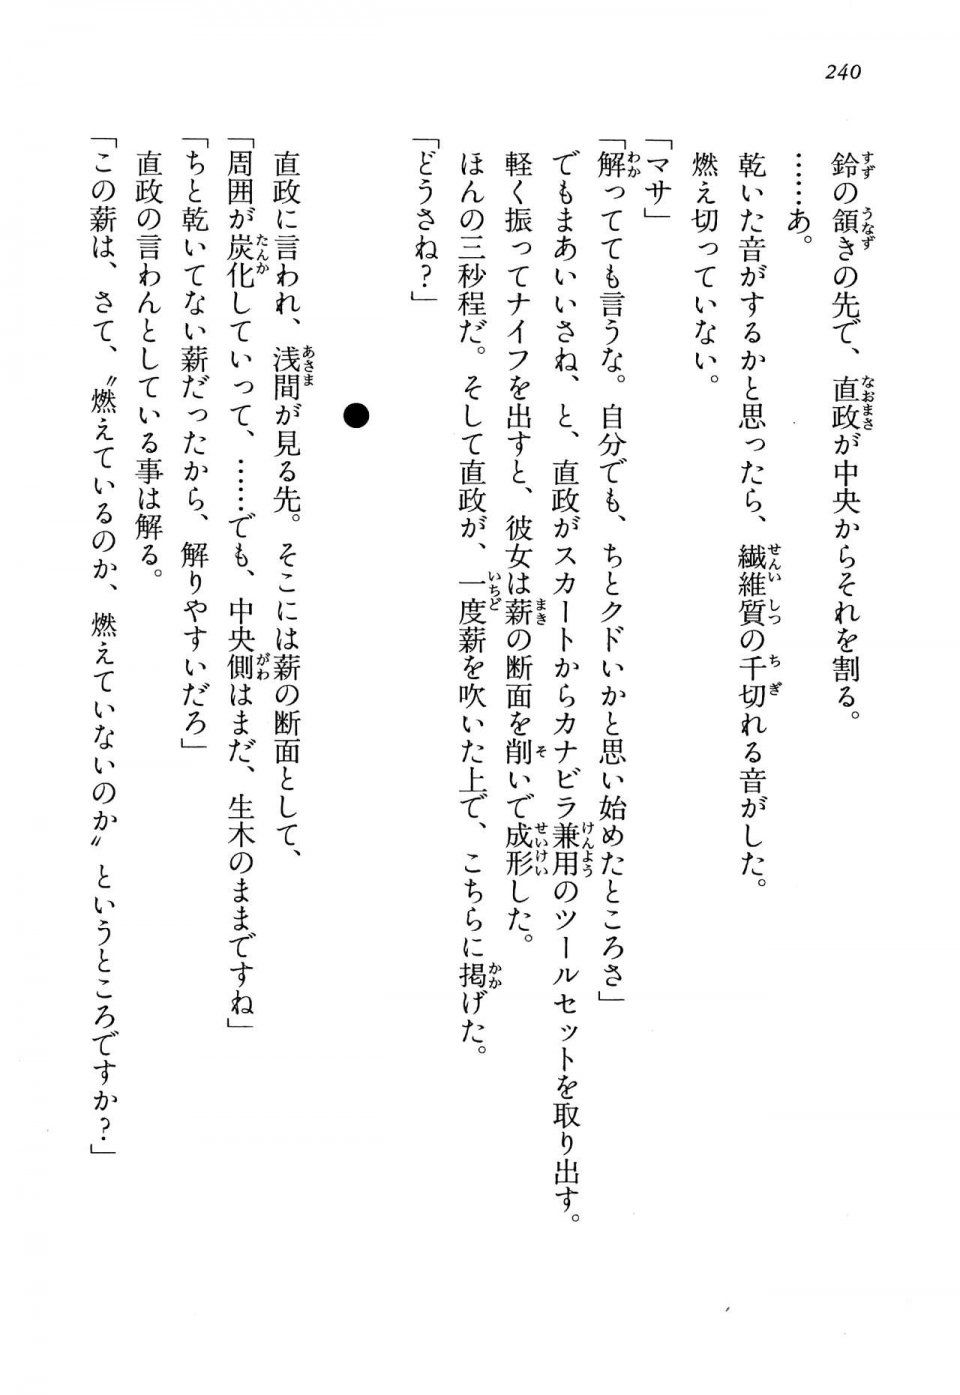 Kyoukai Senjou no Horizon LN Vol 13(6A) - Photo #240